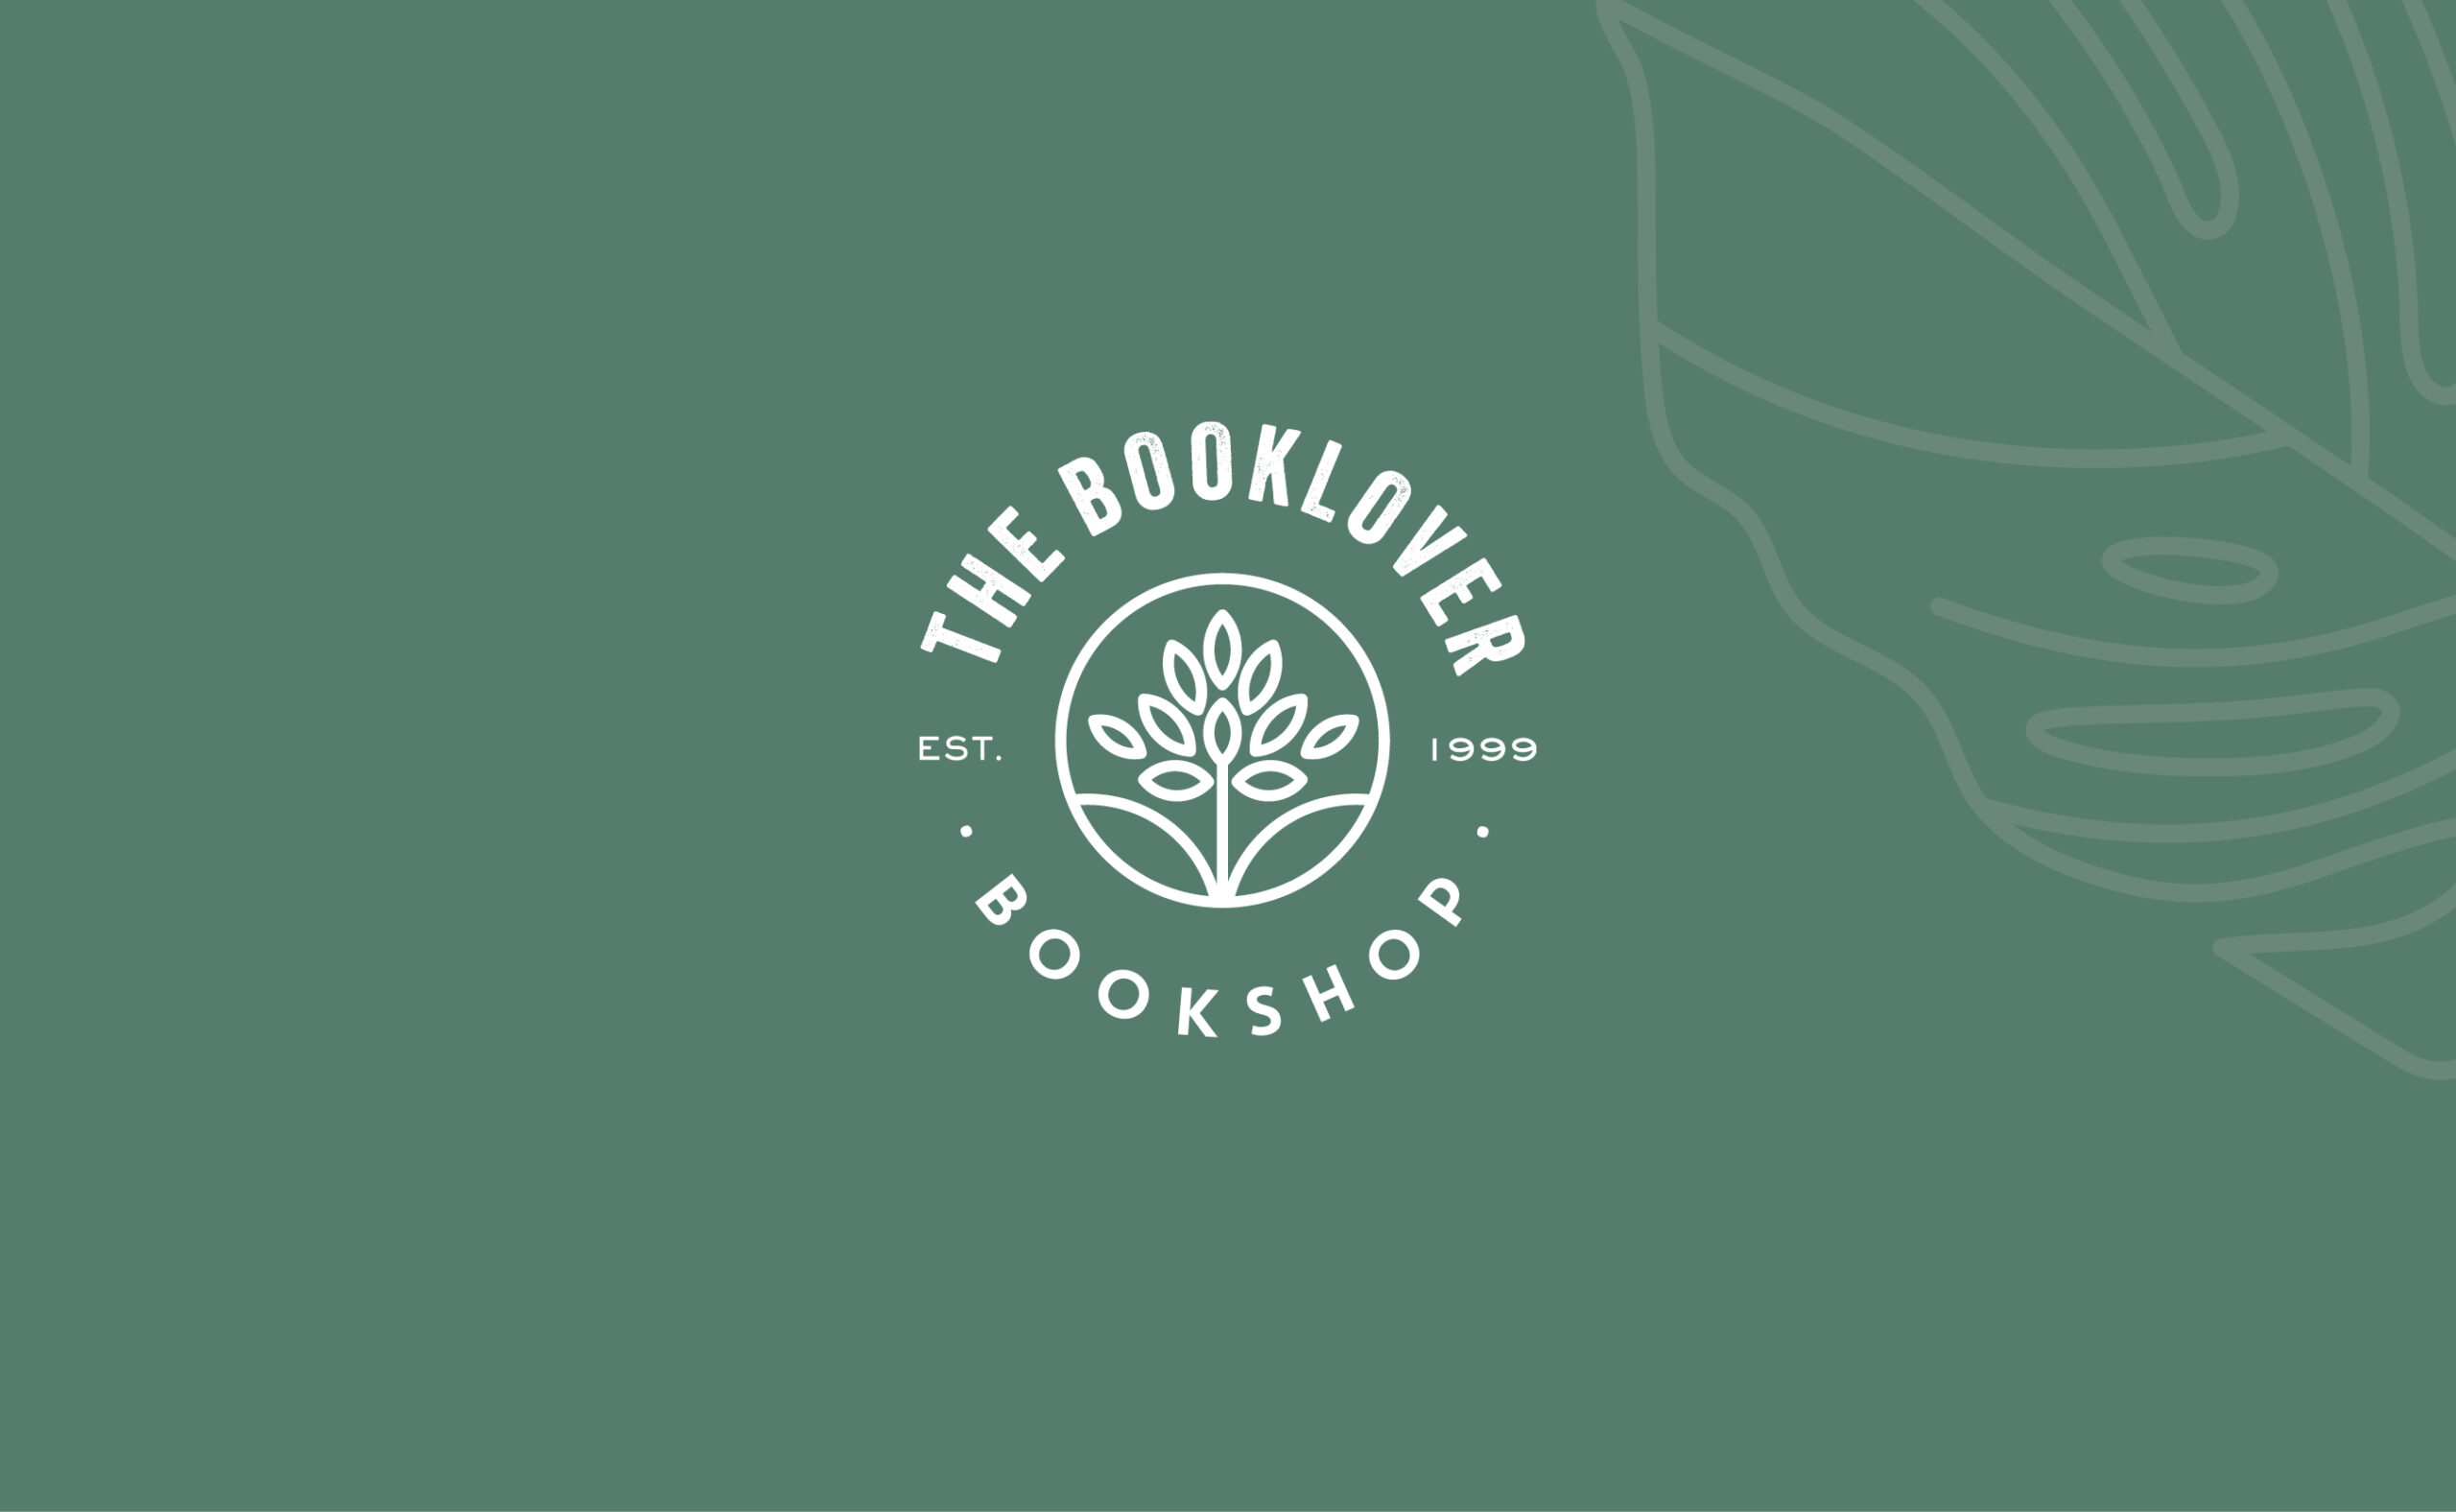 Bookstore-NZ-graphic-design